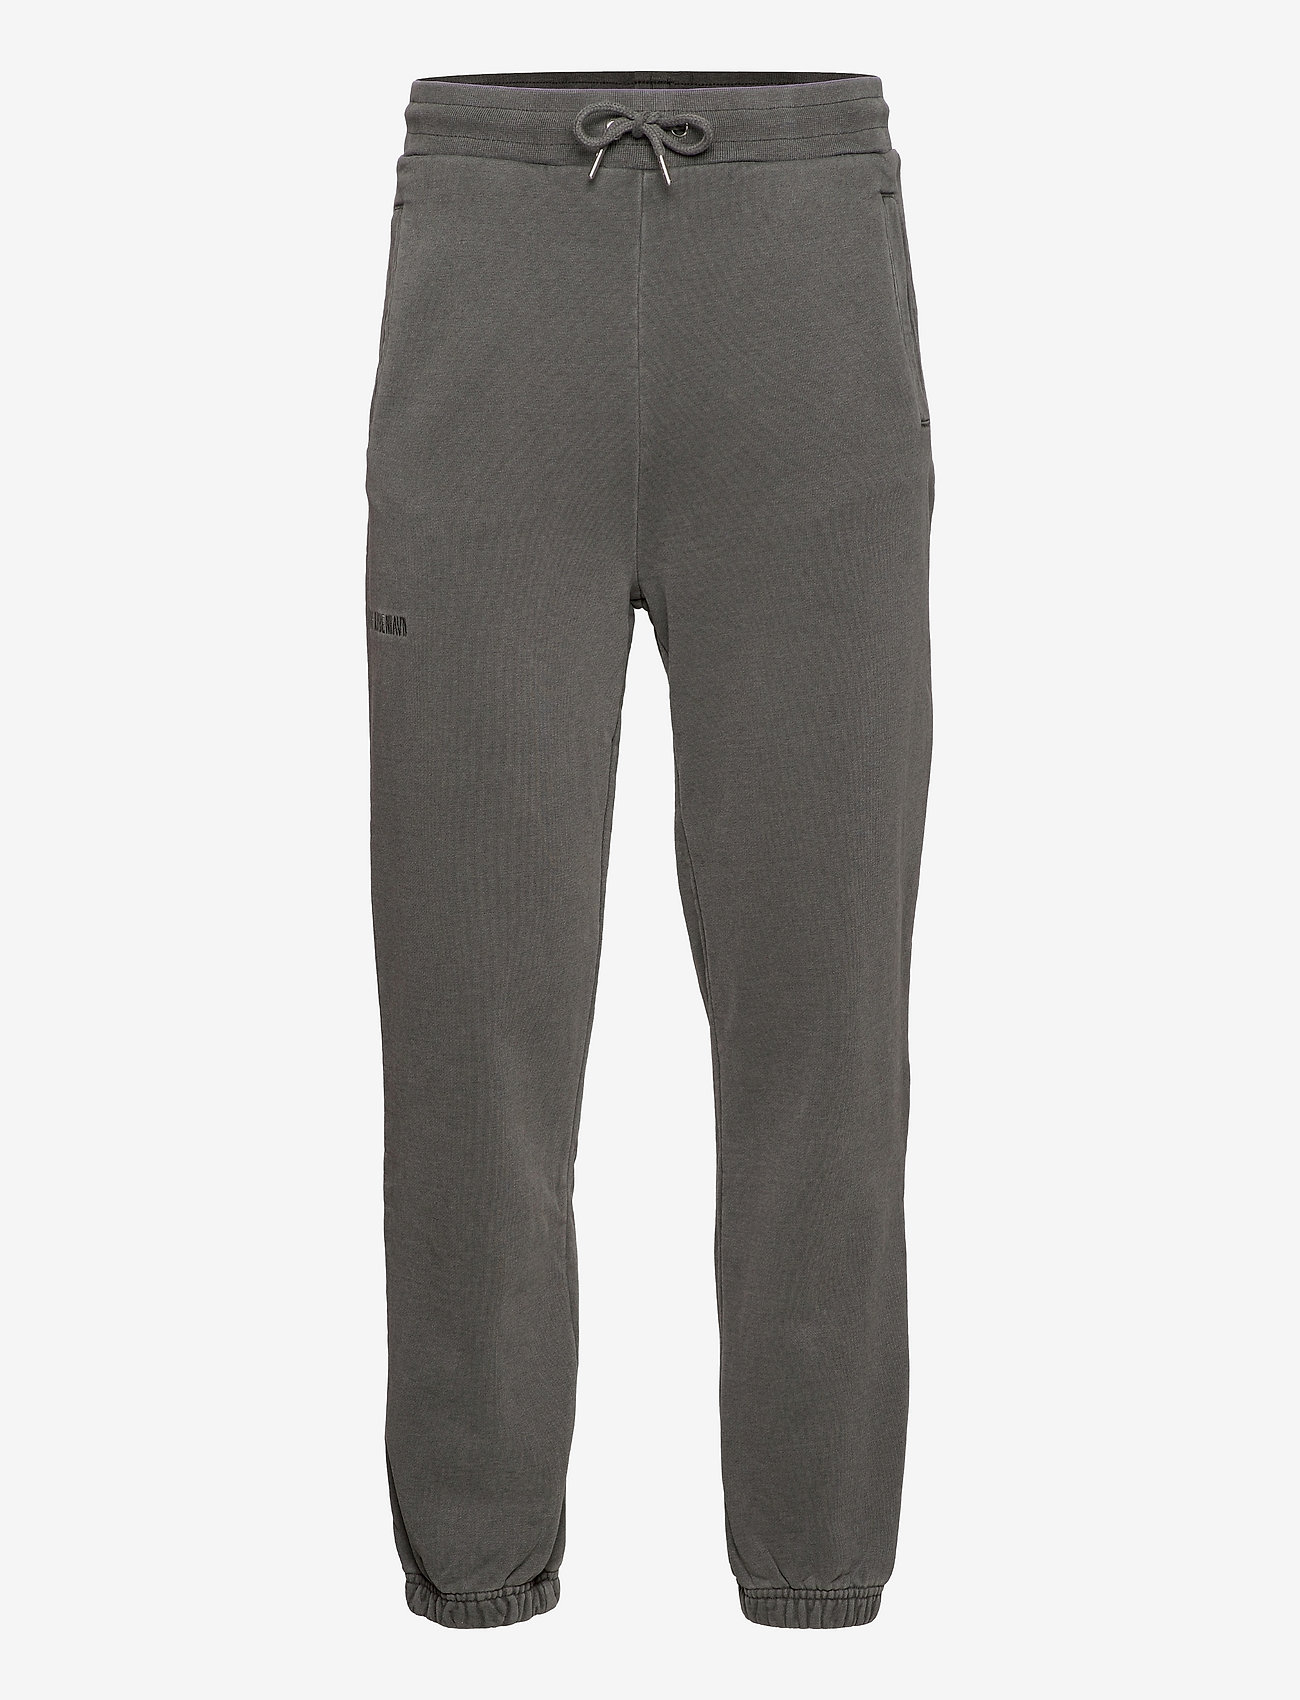 HAN Kjøbenhavn - Sweatpants - spodnie dresowe - dark grey logo - 0